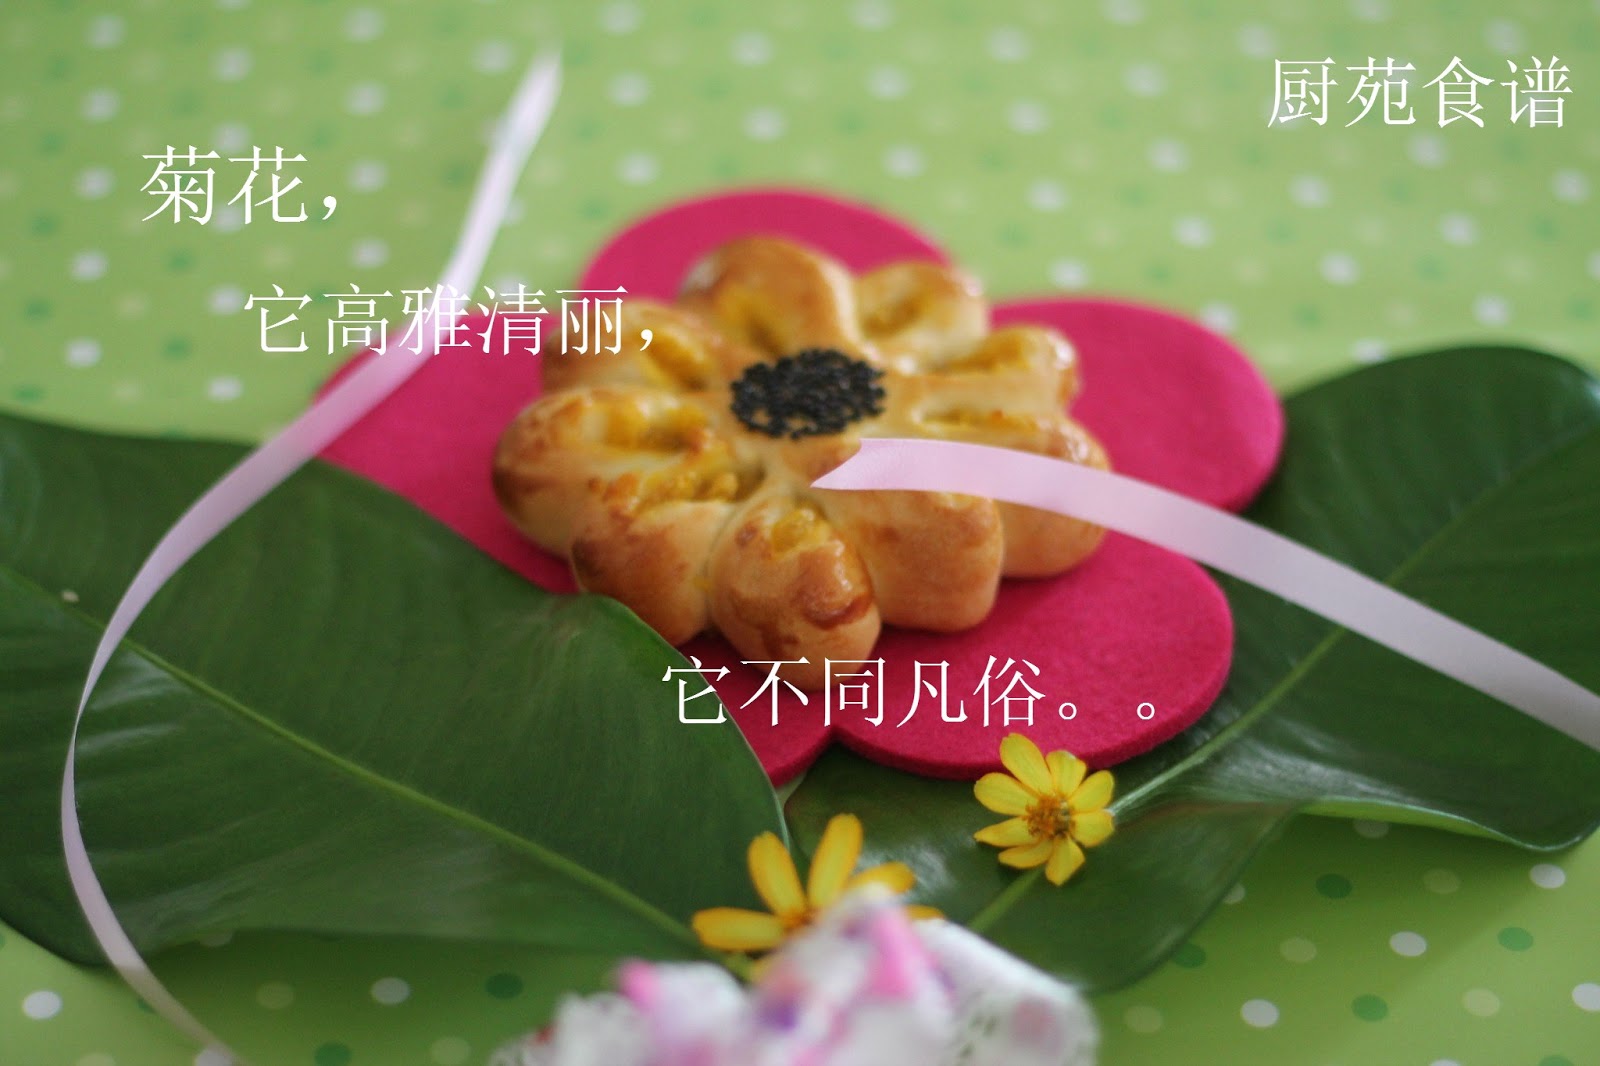 厨苑食谱: 菊花面包 (Chrysanthemum Buns)